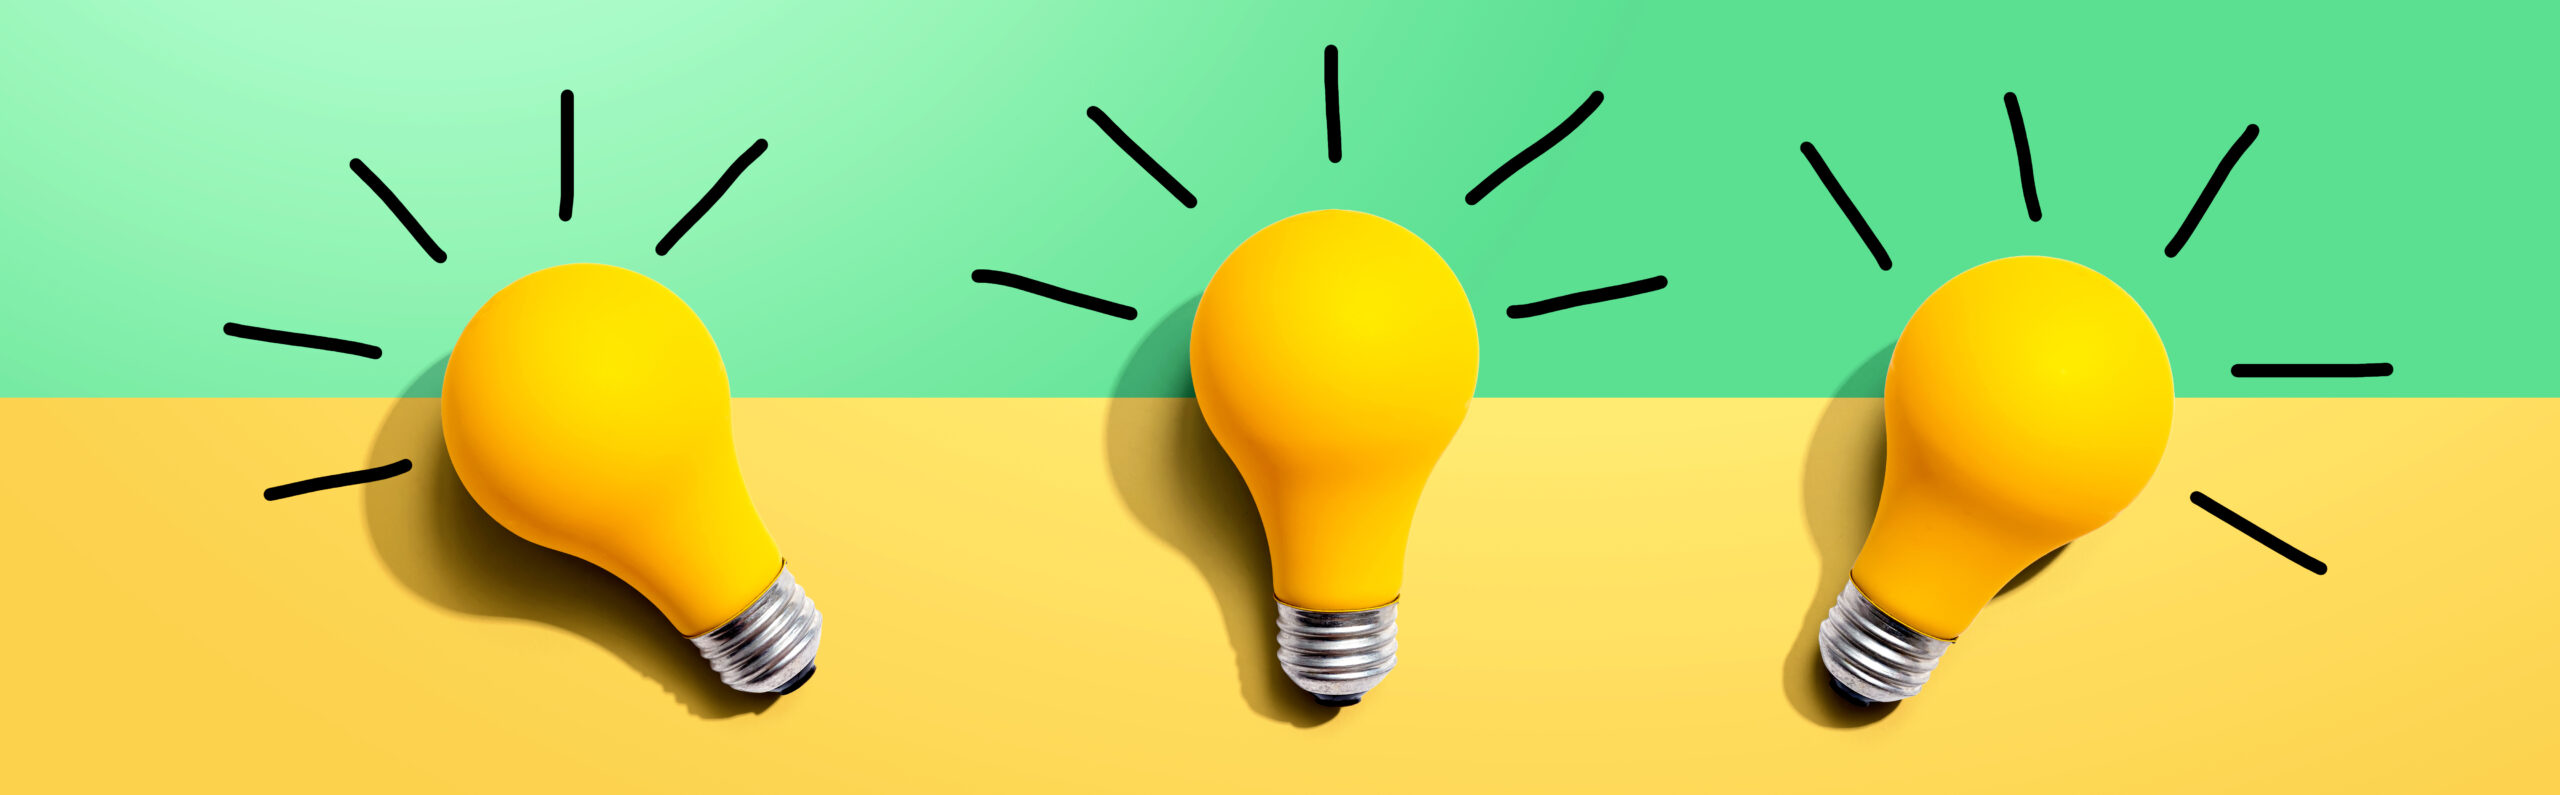 3-Lightbulb-Ideas-Shining